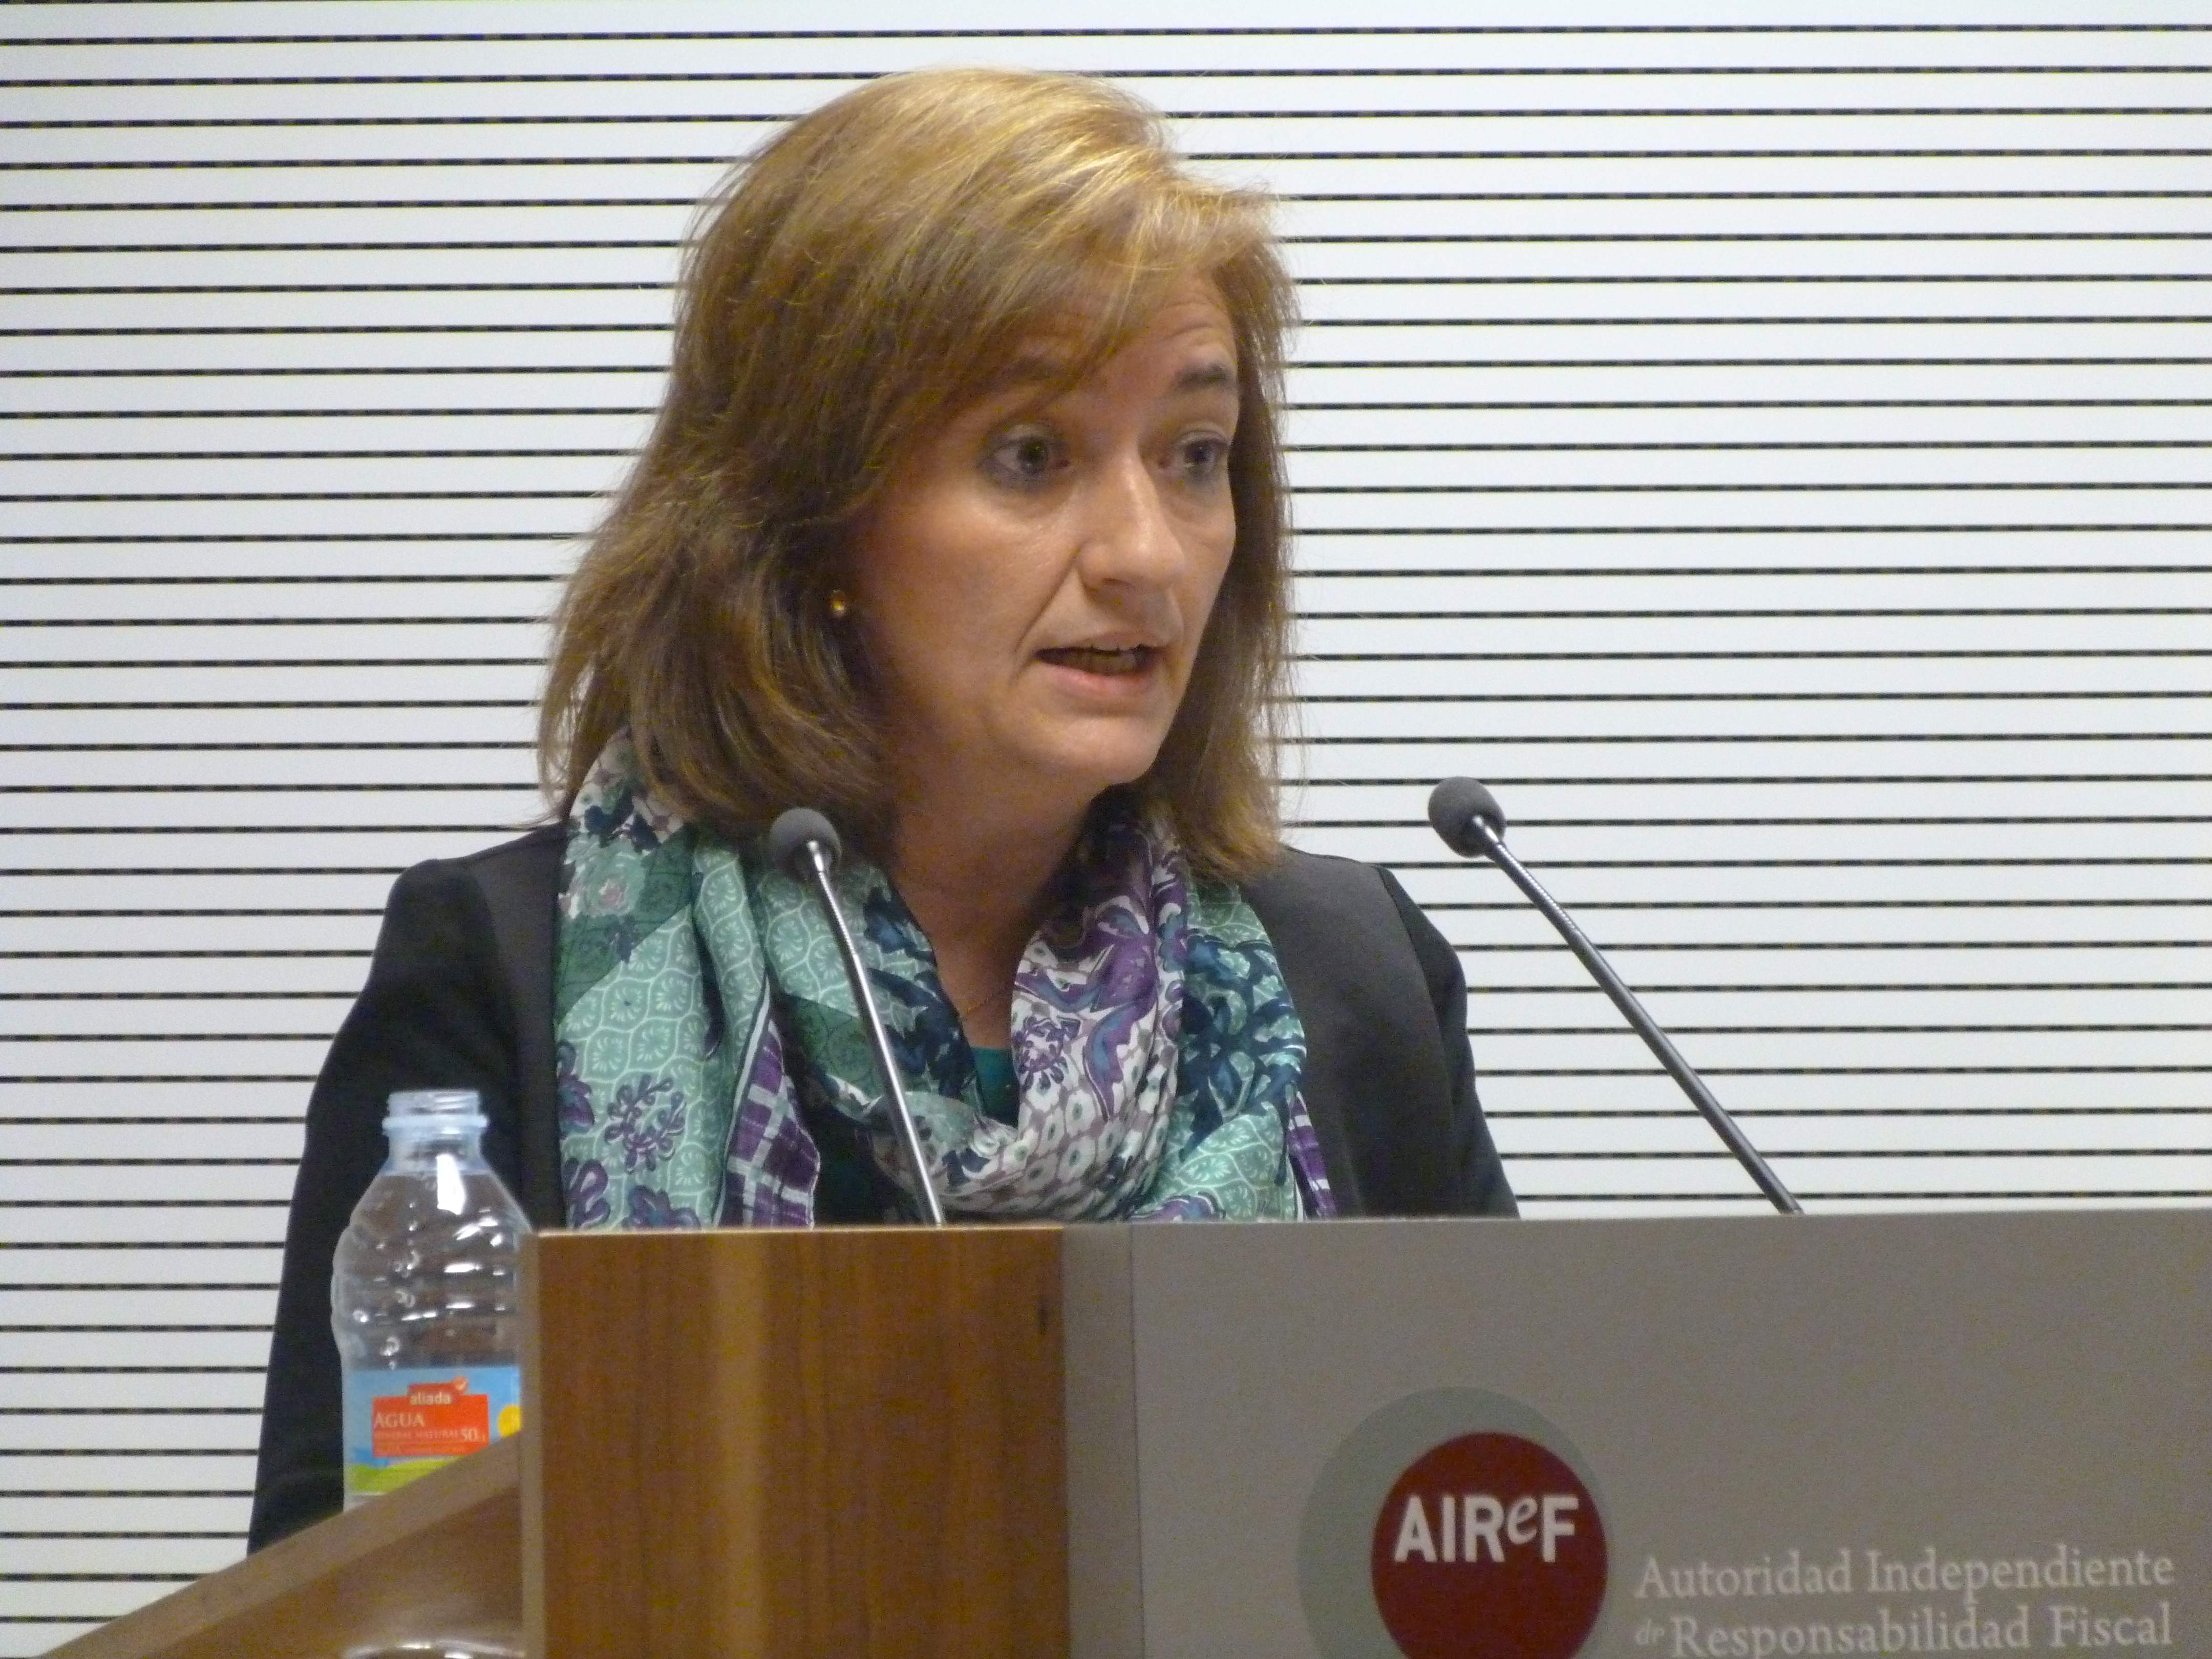 L'Airef considera "difícil d'assumir" un model de finançament singular per a Catalunya